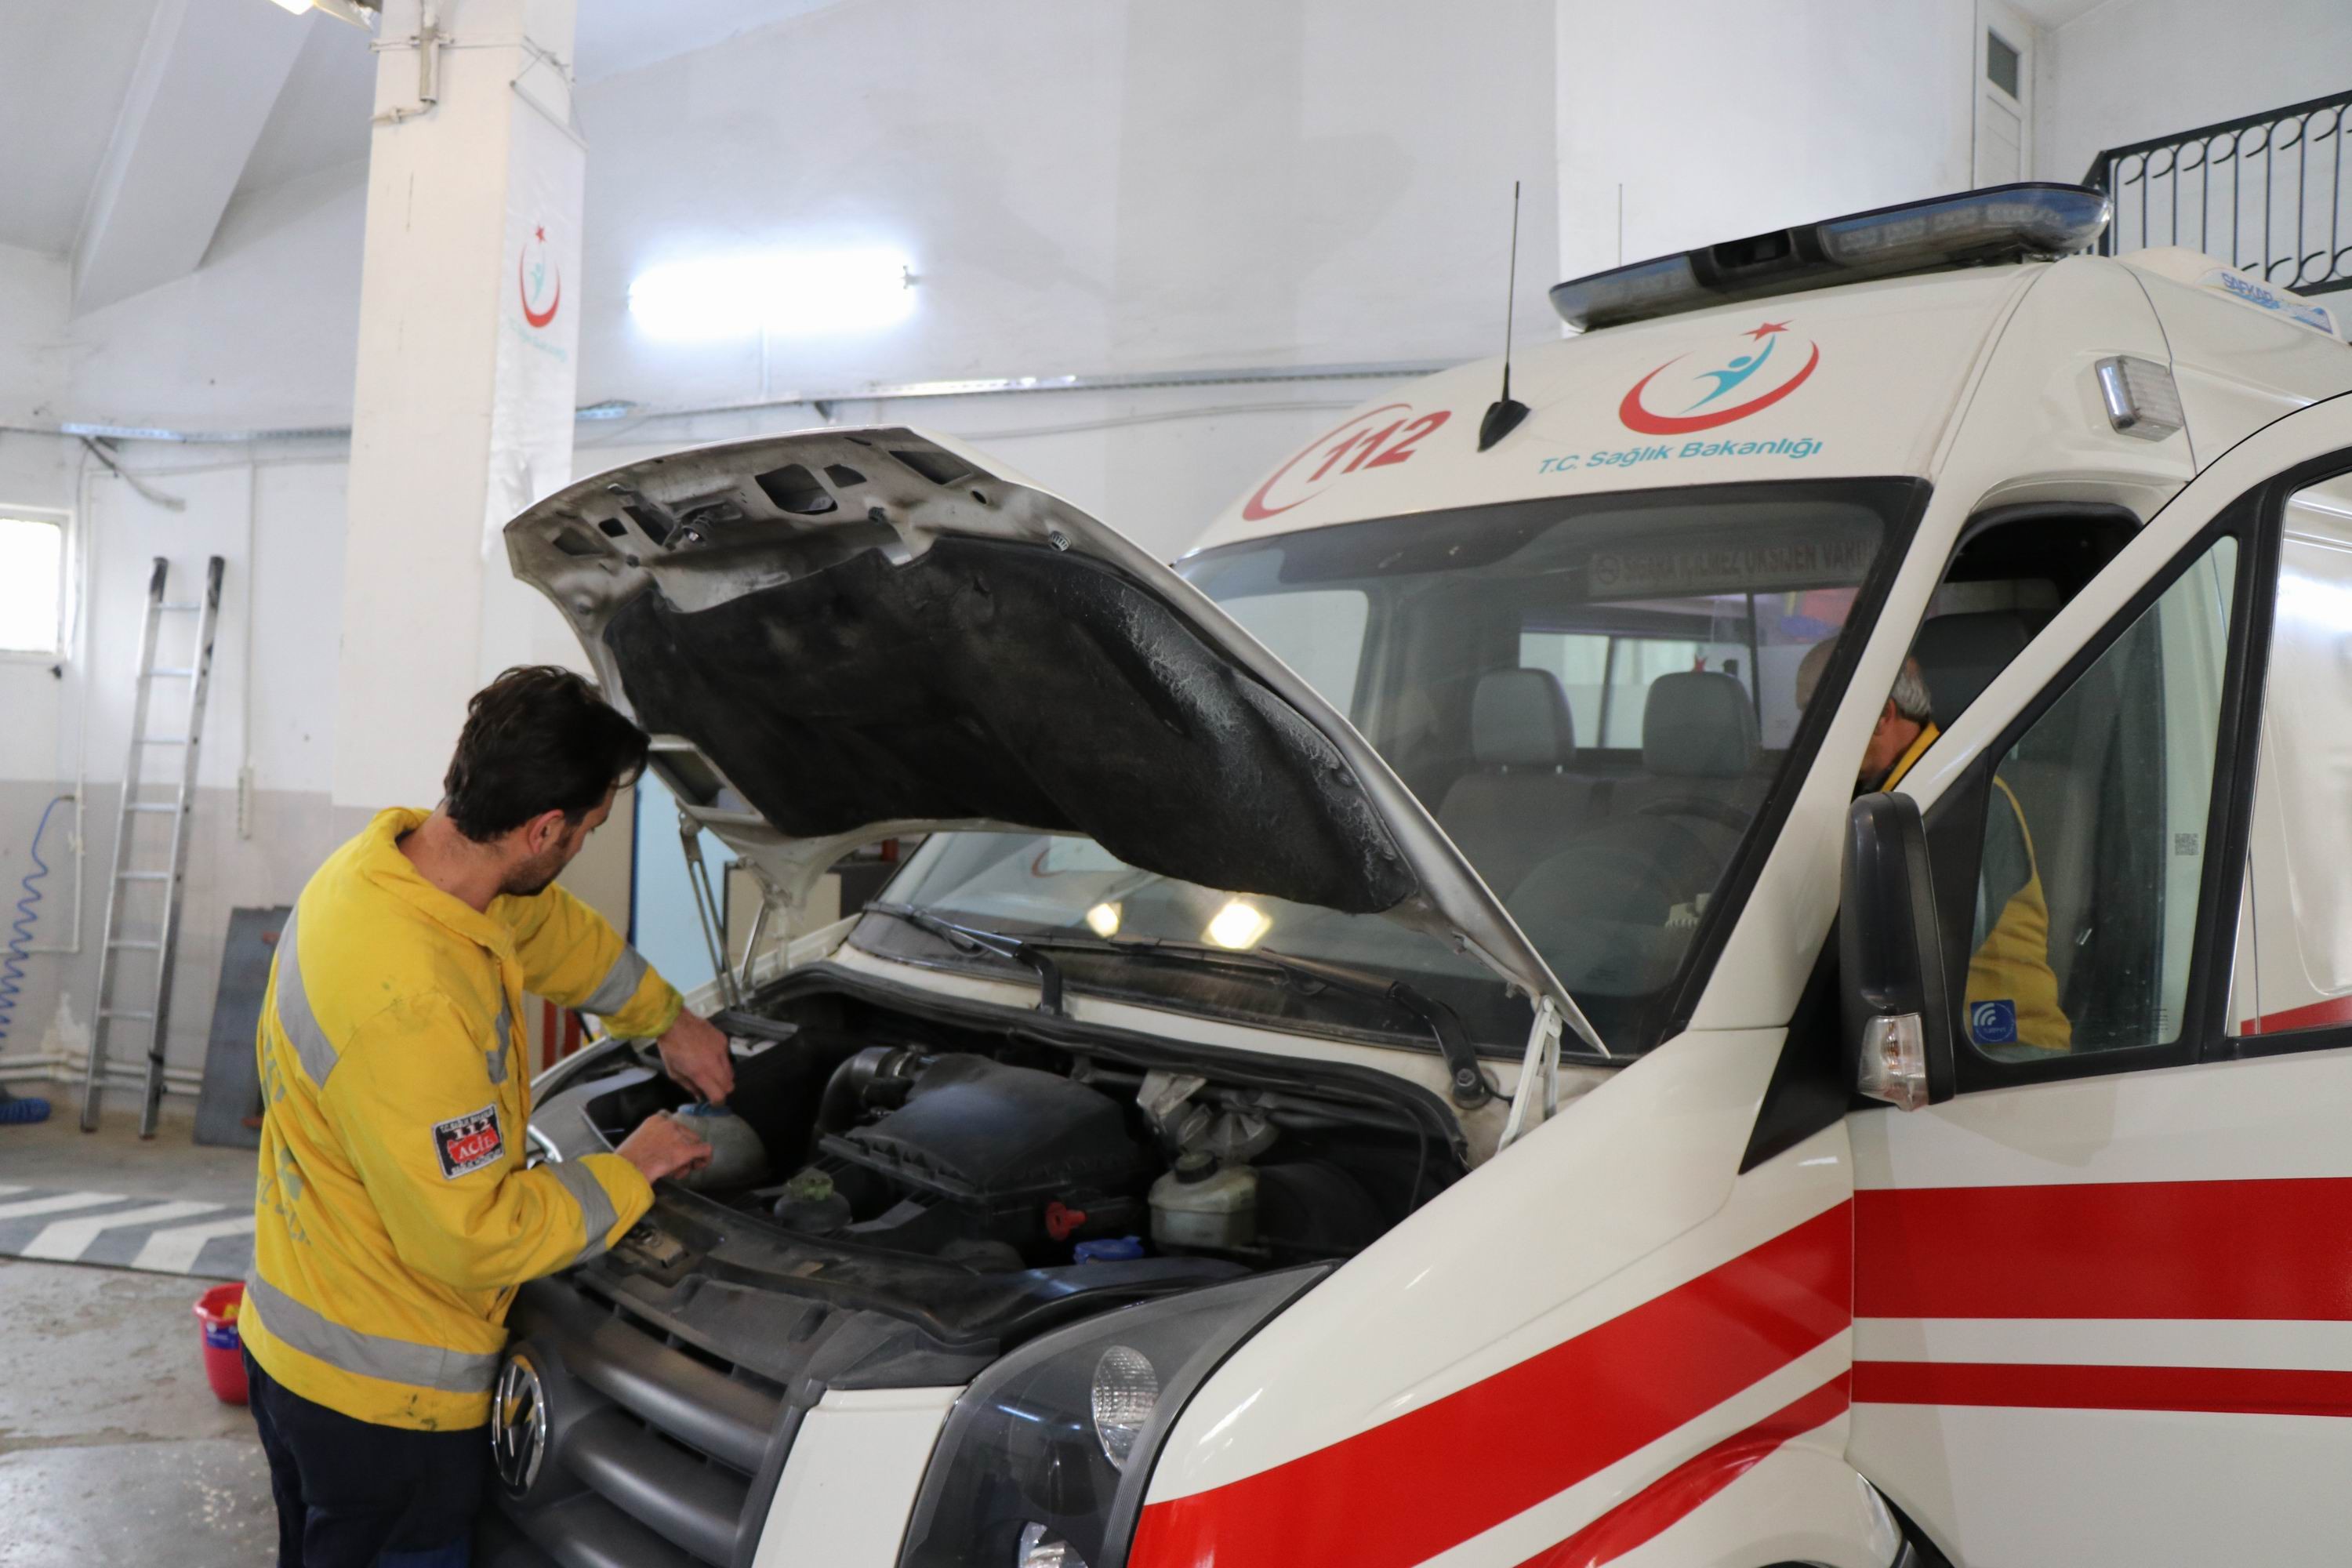 Sağlık Müdürlüğü kendi ambulans tamirhanesini kurdu